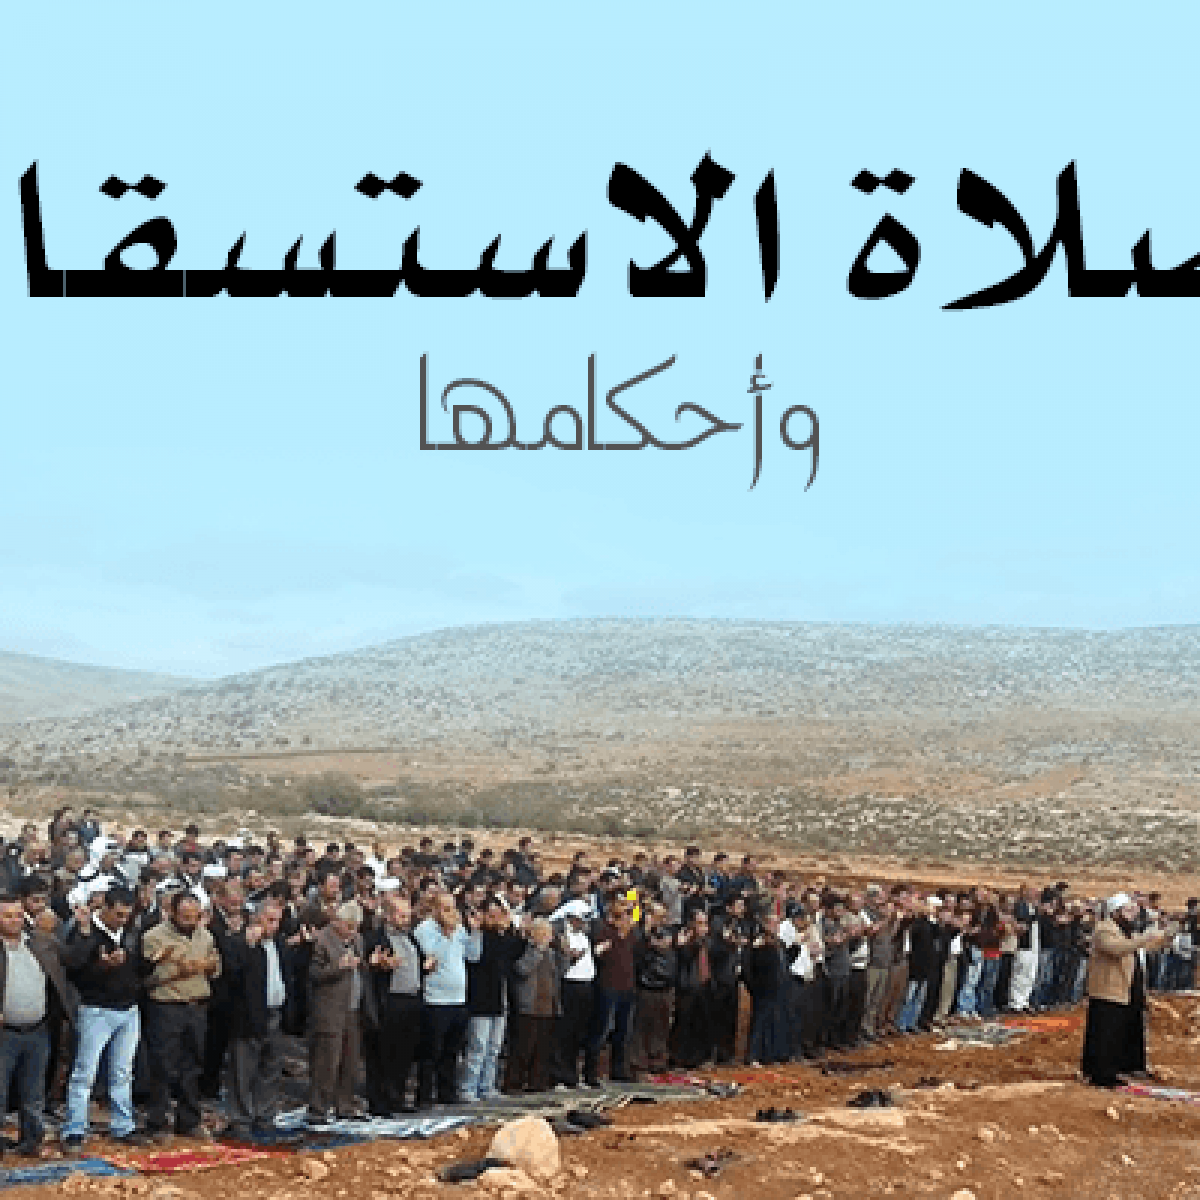 وزارة الداخلية اطلاق النار في البكيرية والقبض على فواز عبدالرحمن عيد الحربي 10